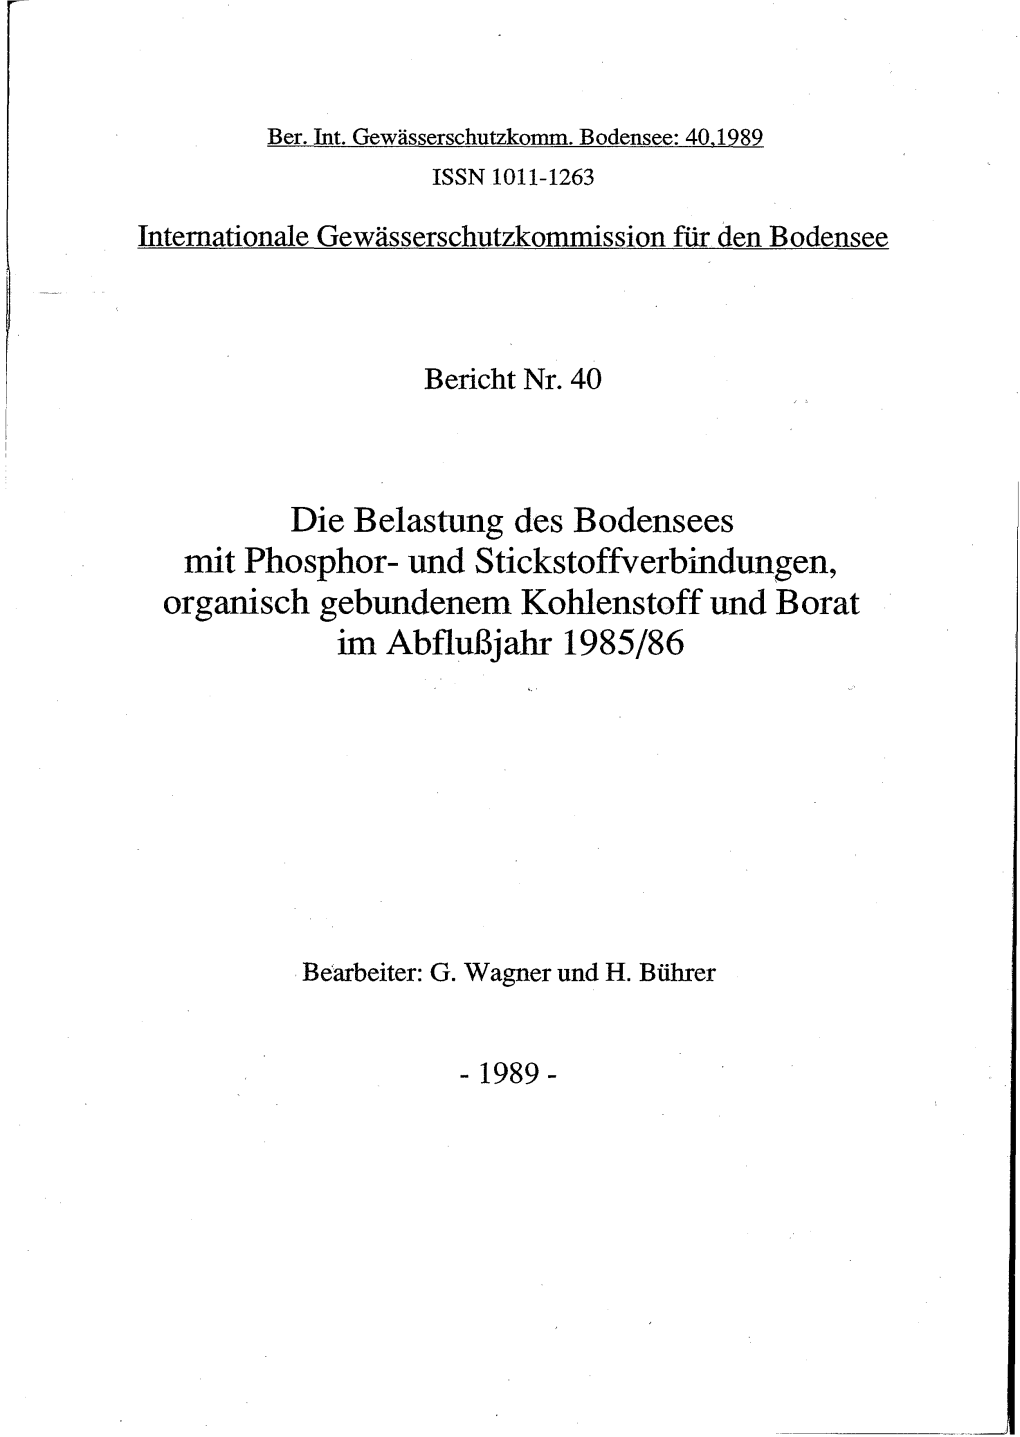 Die Belastung Des Bodensees Mit Phosphor- Und Stickstoffverbindungen, Organisch Gebundenem Kohlenstoff Und Borat Im Abflußjahr 1985/86